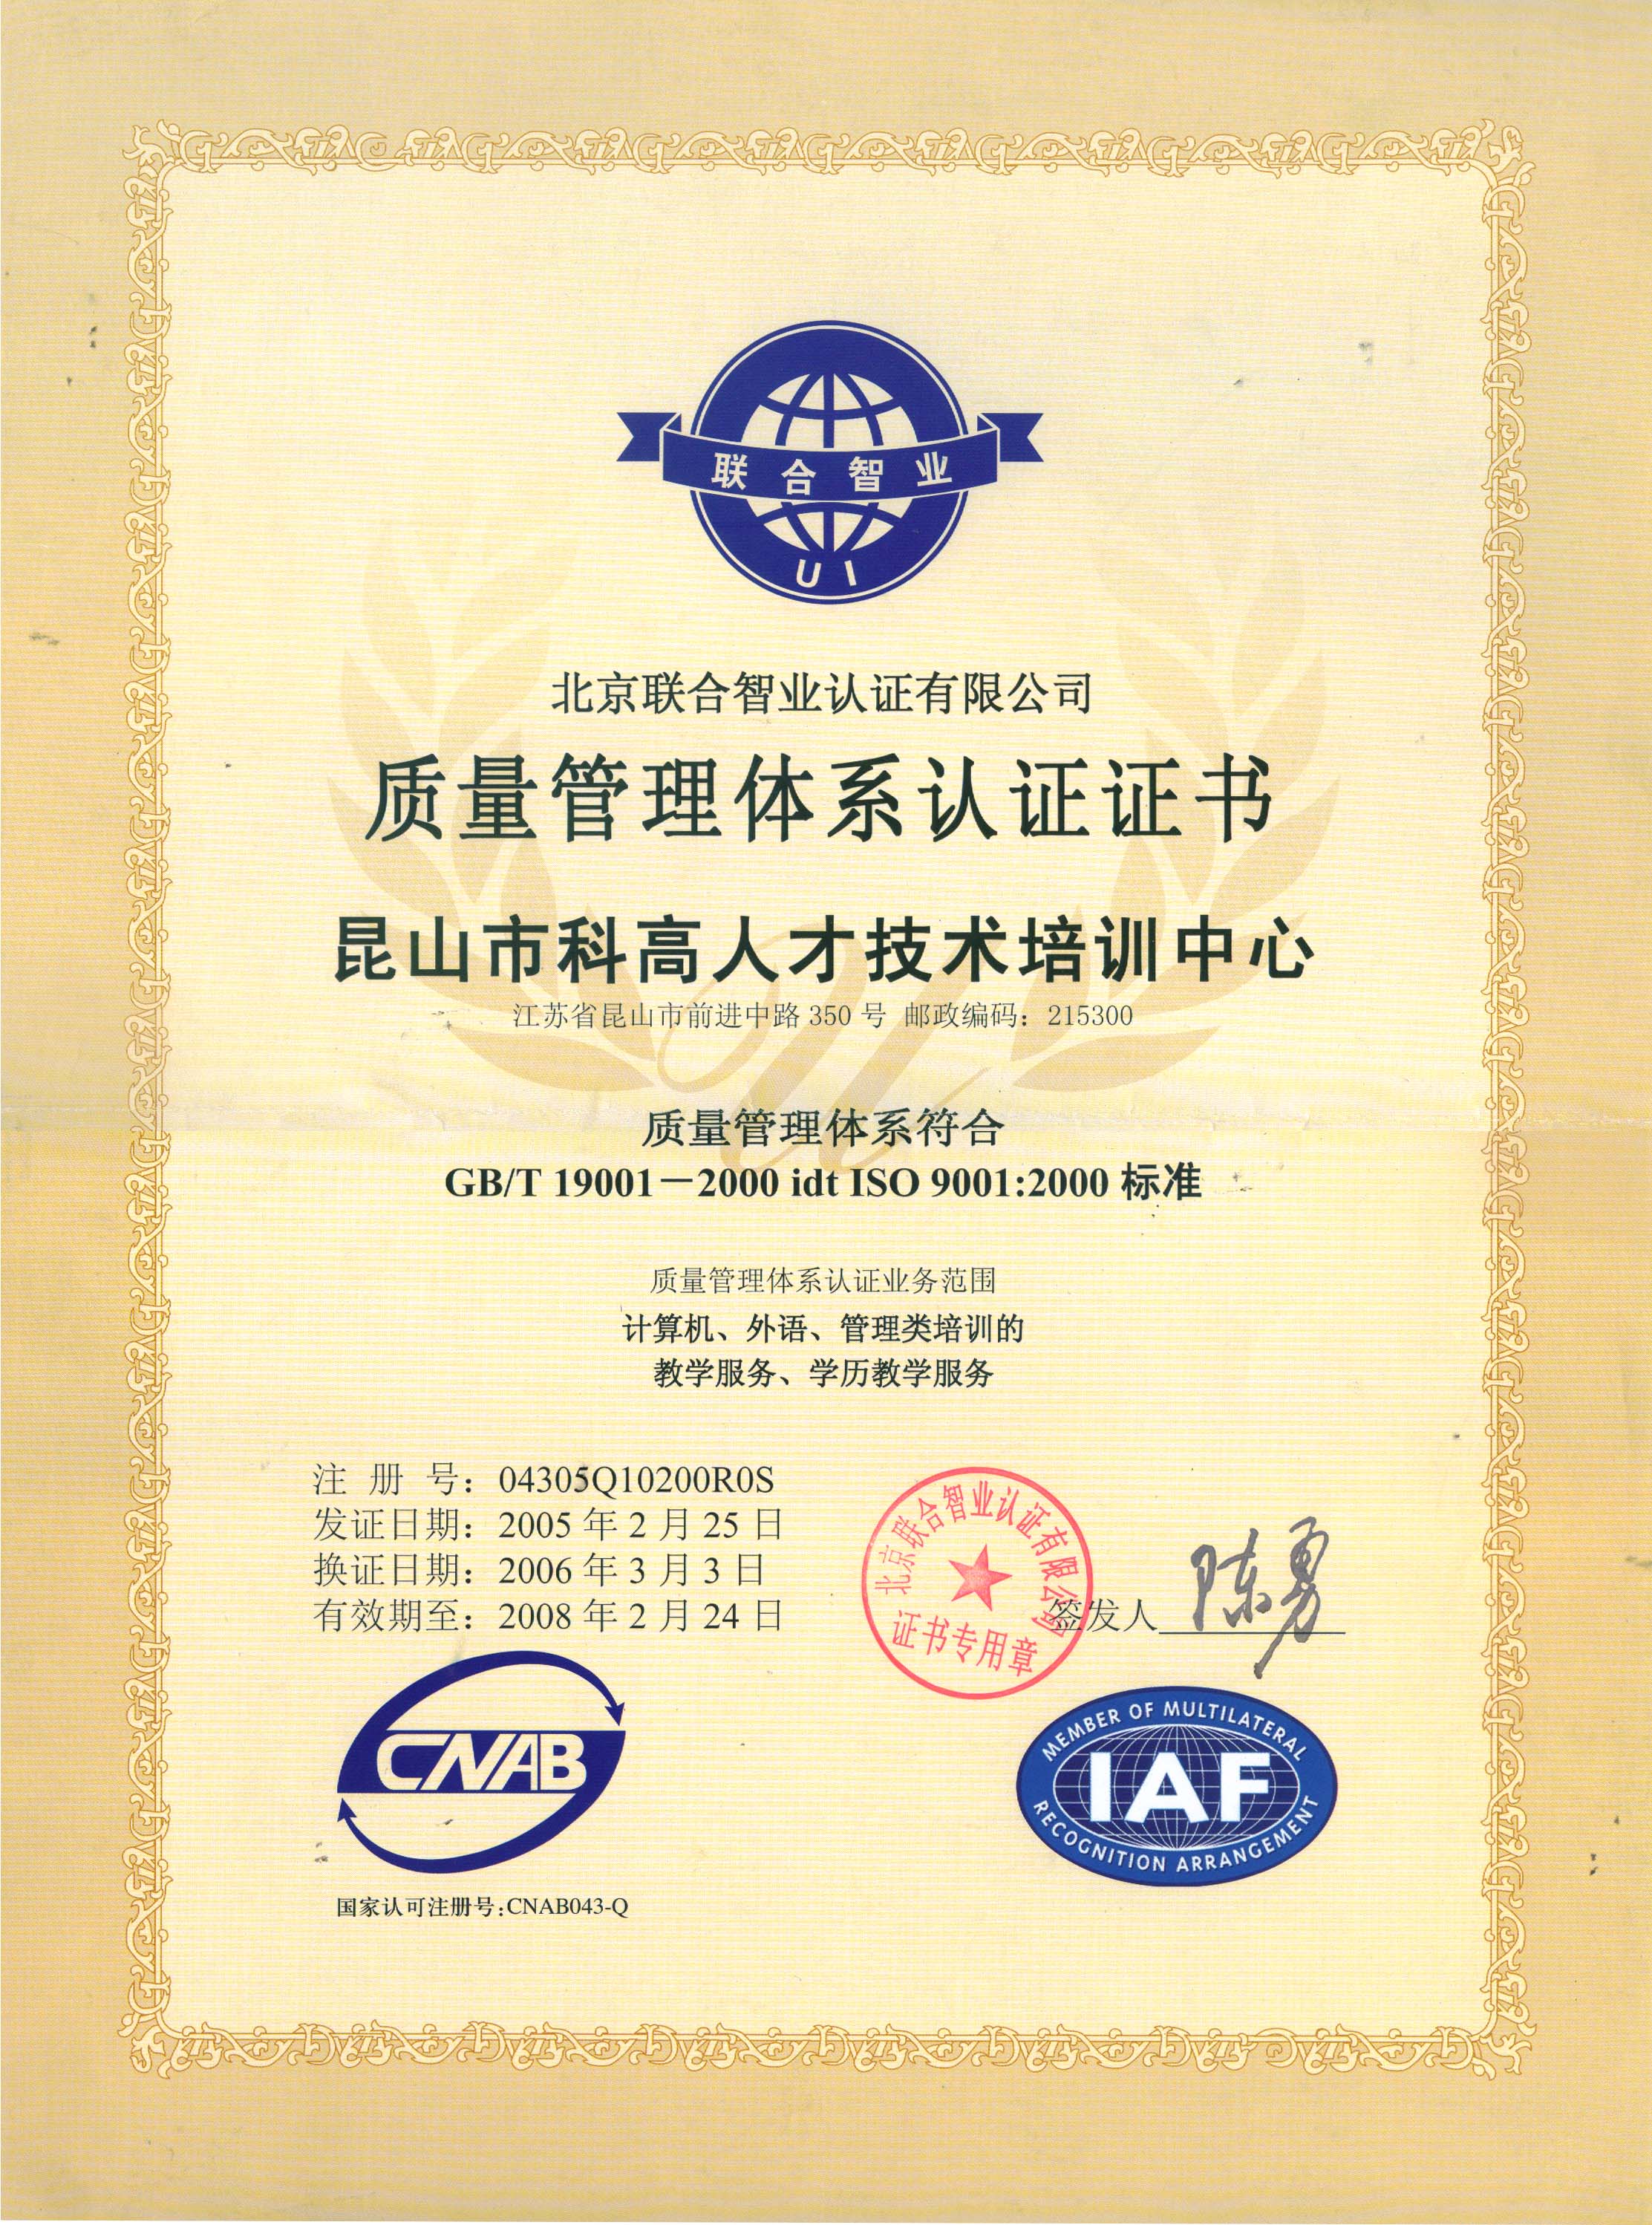 2005年昆山科高人才培训中心获“ISO9001质量管理体系认证证书”